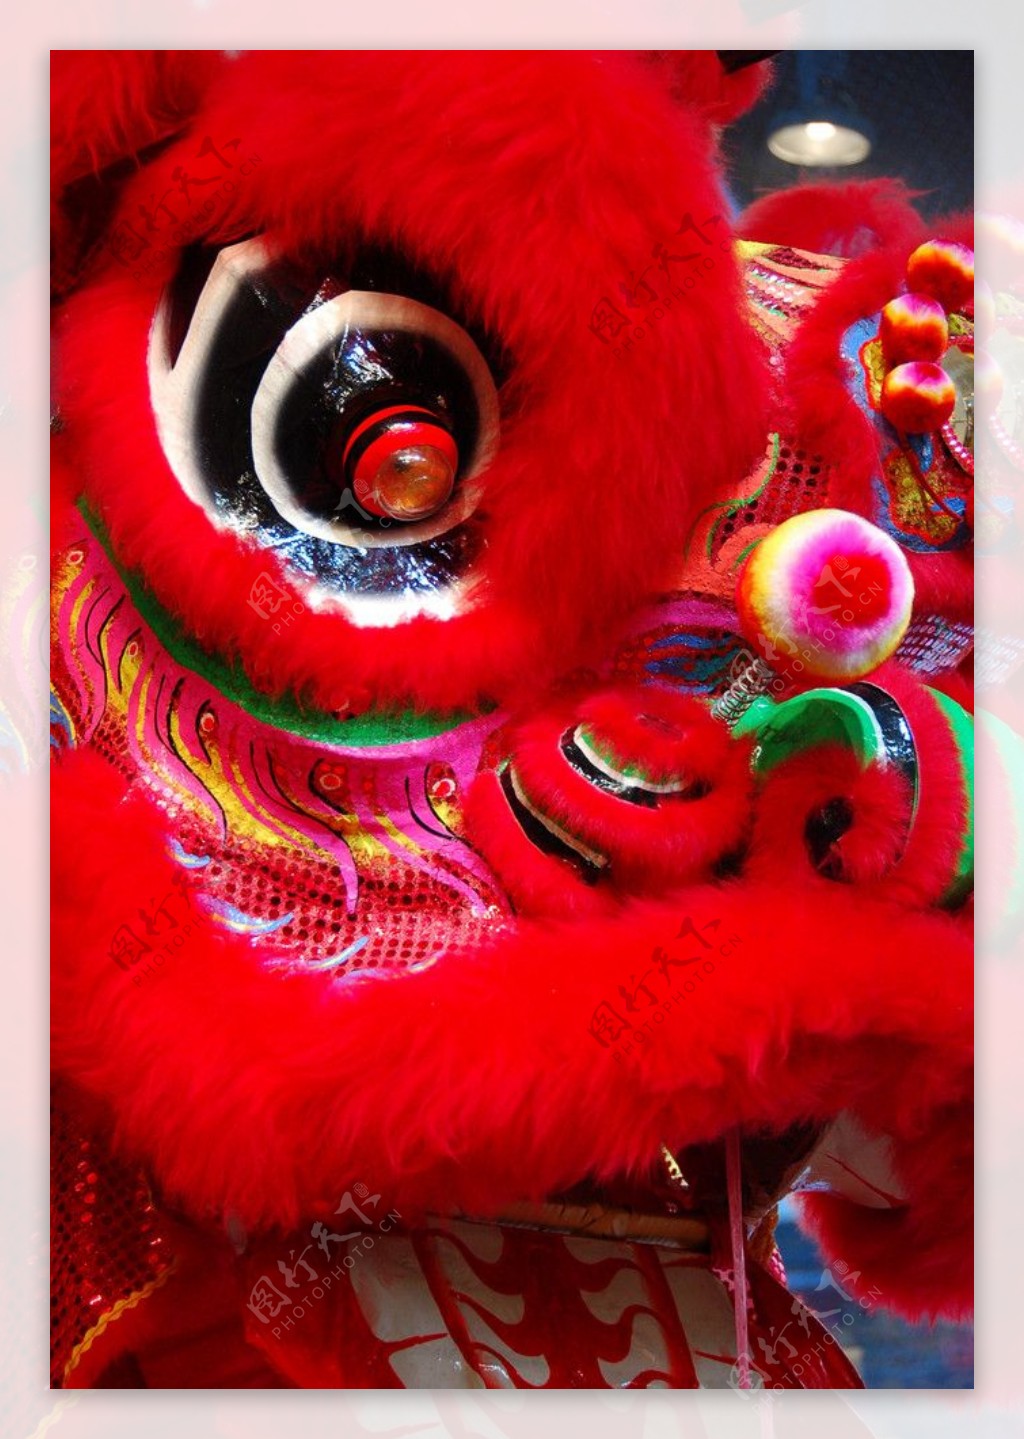 舞狮南狮中国传统文化表演艺术瑰宝节庆华人狮子liondance红特写图片